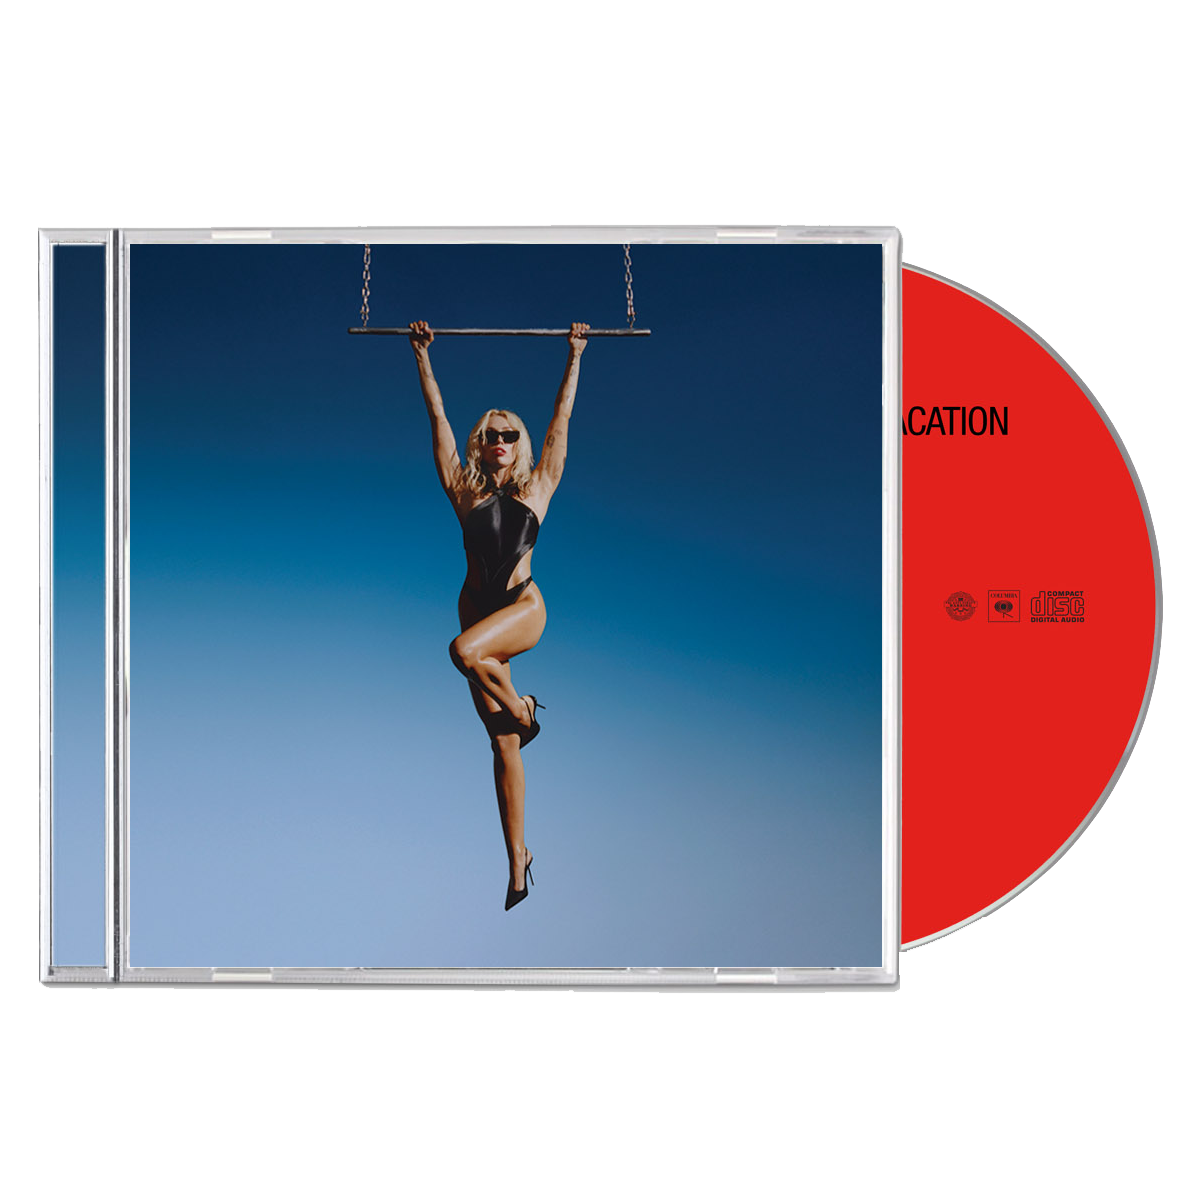 Miley Cyrus - Endless Summer Vacation CD